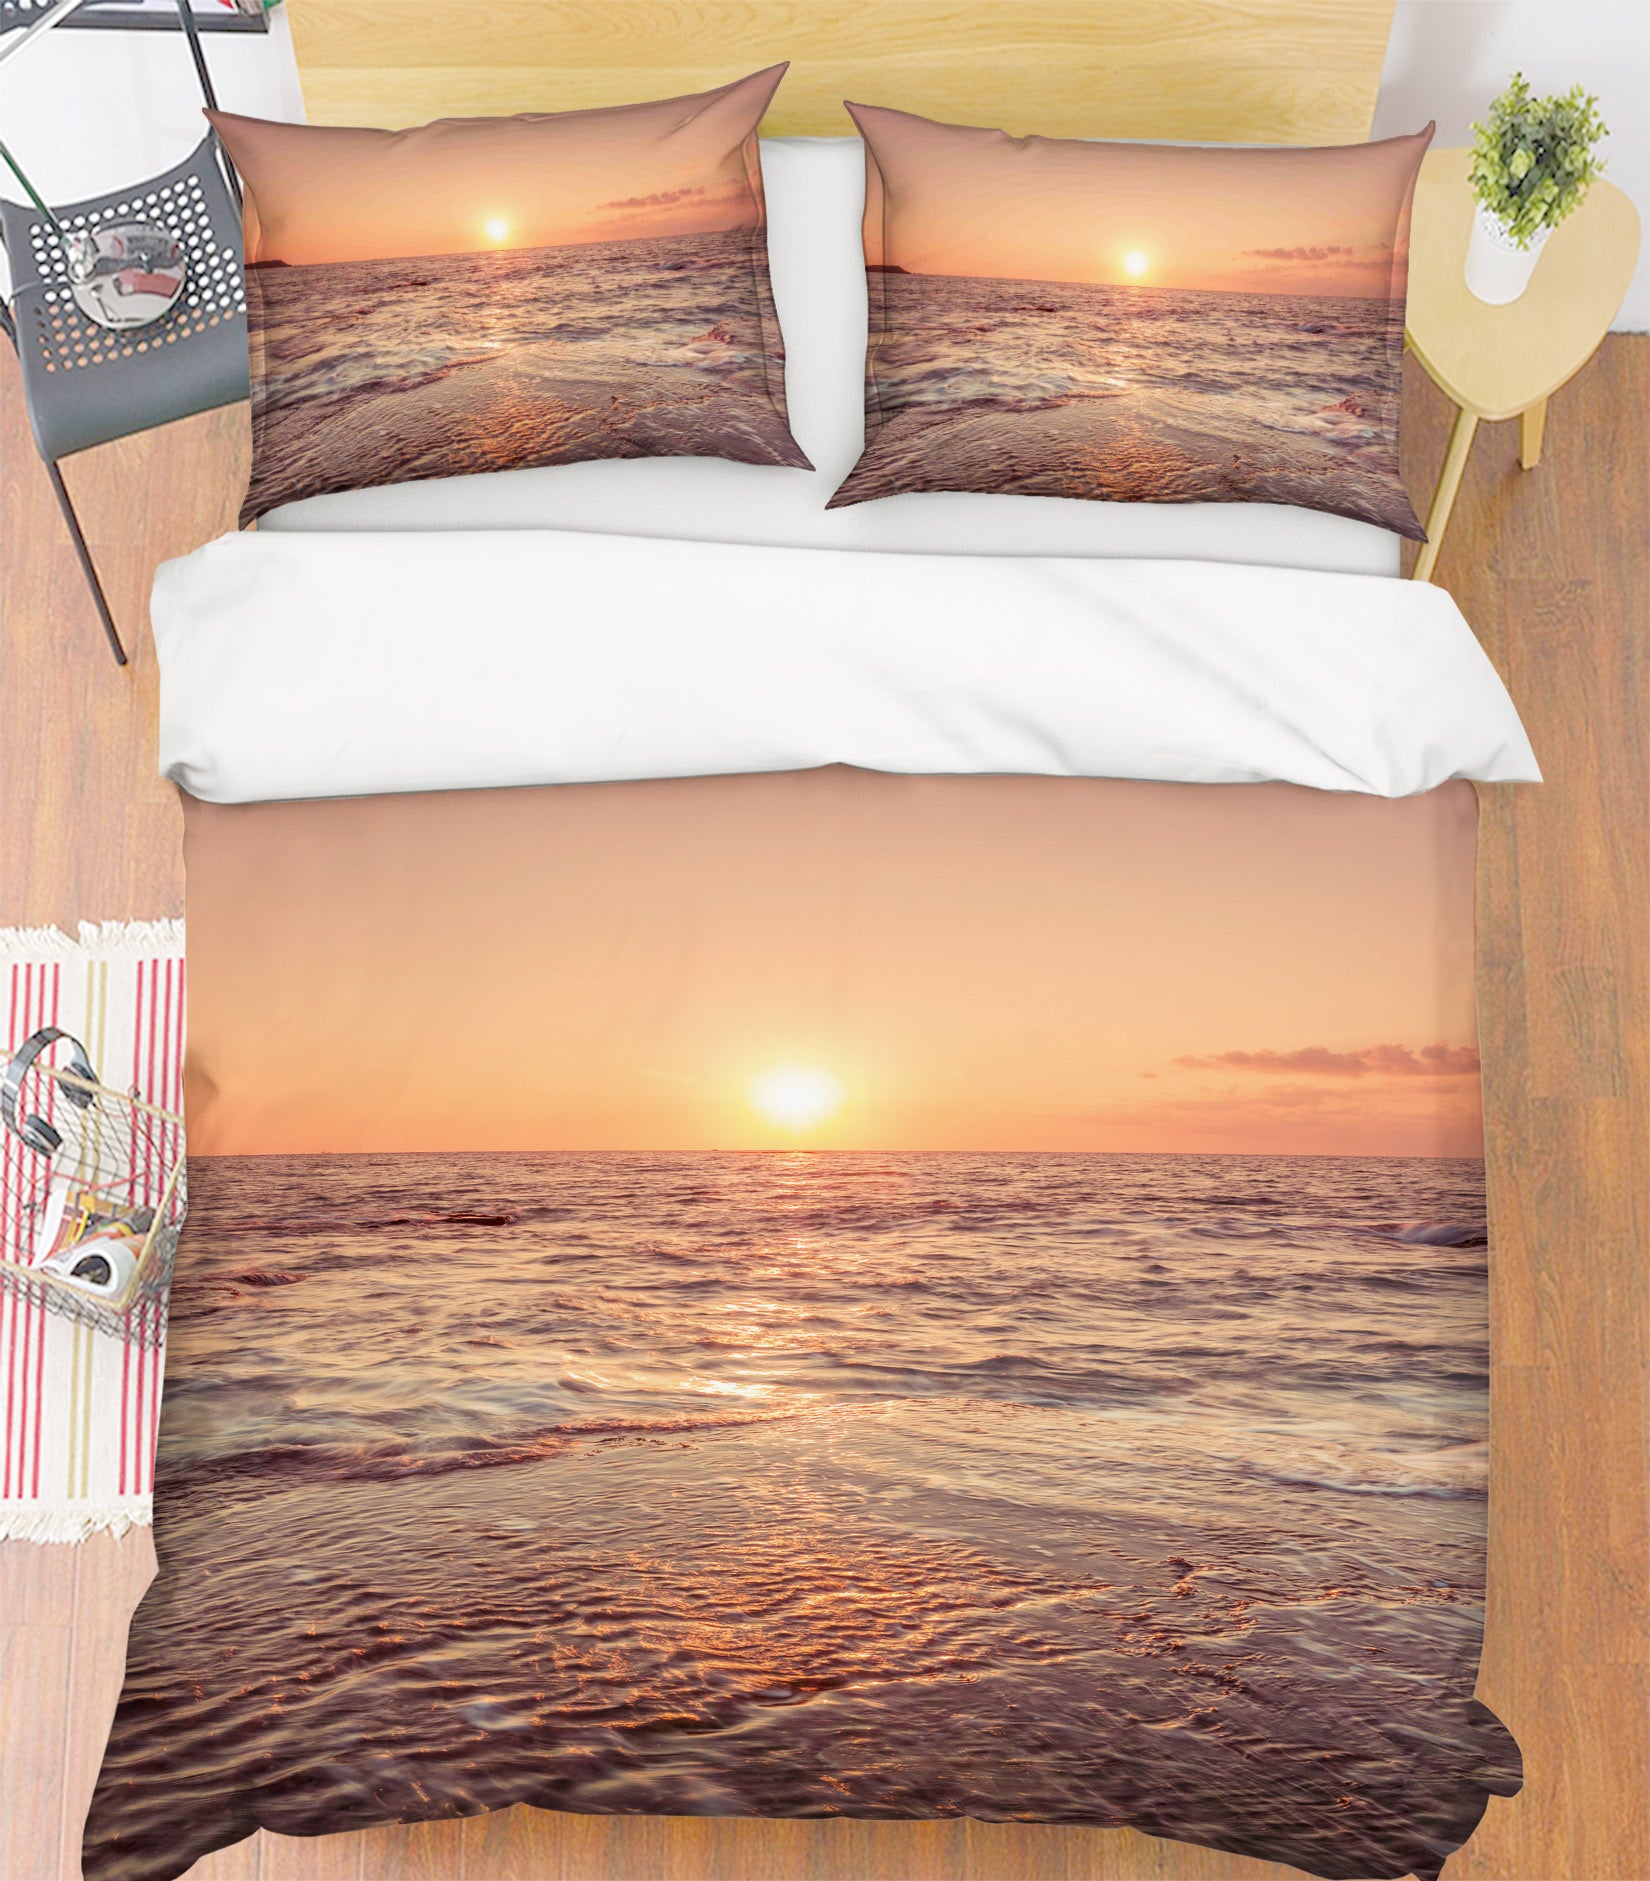 3D Sun Beach 85145 Assaf Frank Bedding Bed Pillowcases Quilt